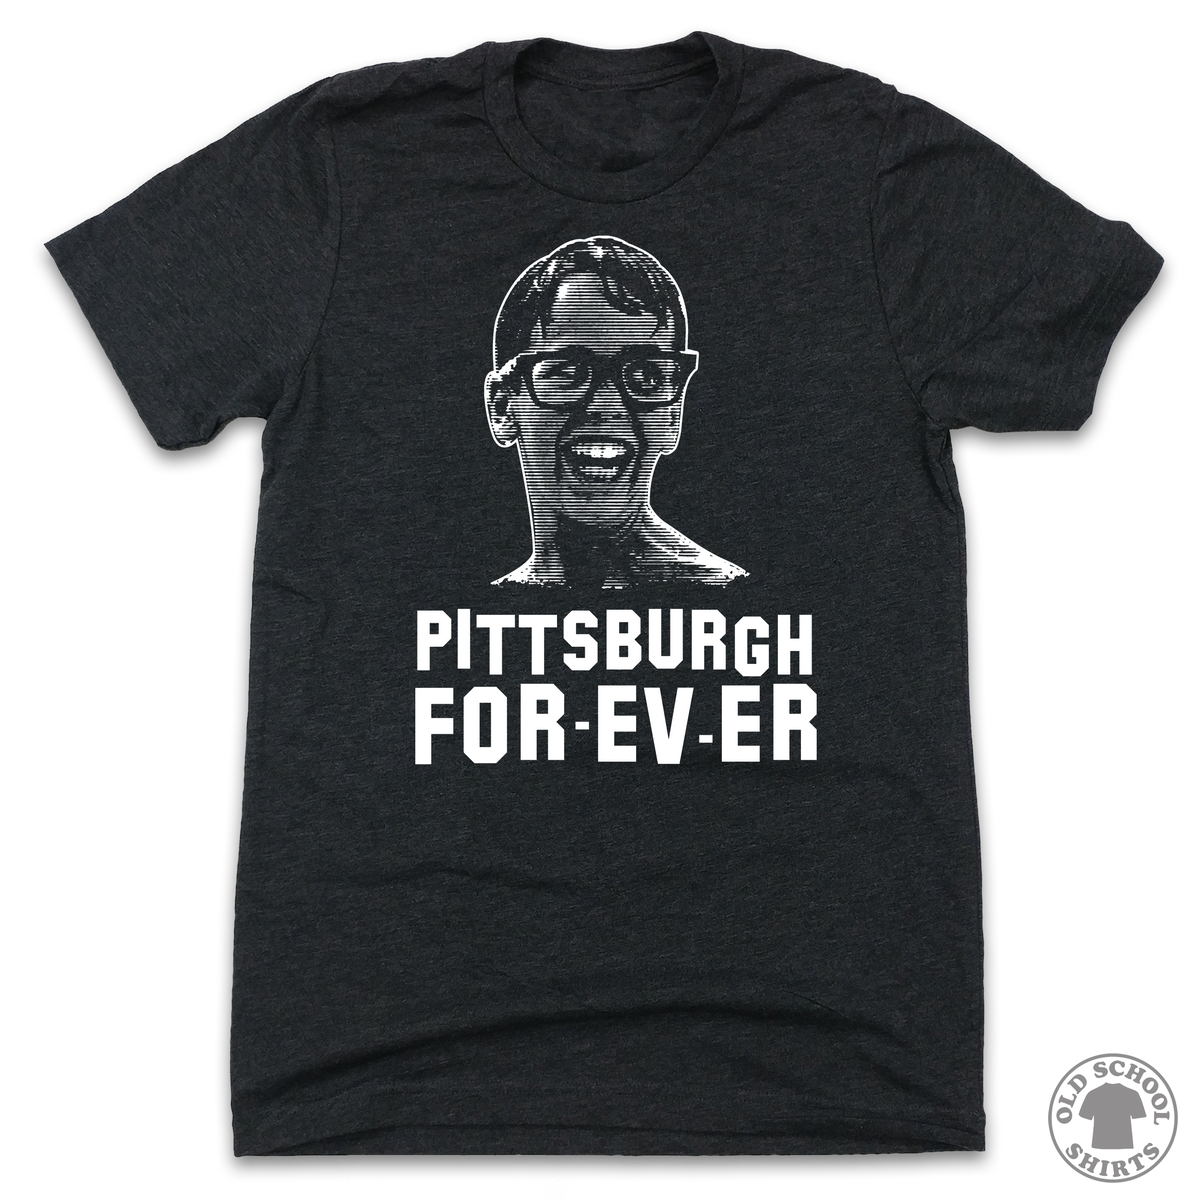 Pittsburgh FOR-EV-ER